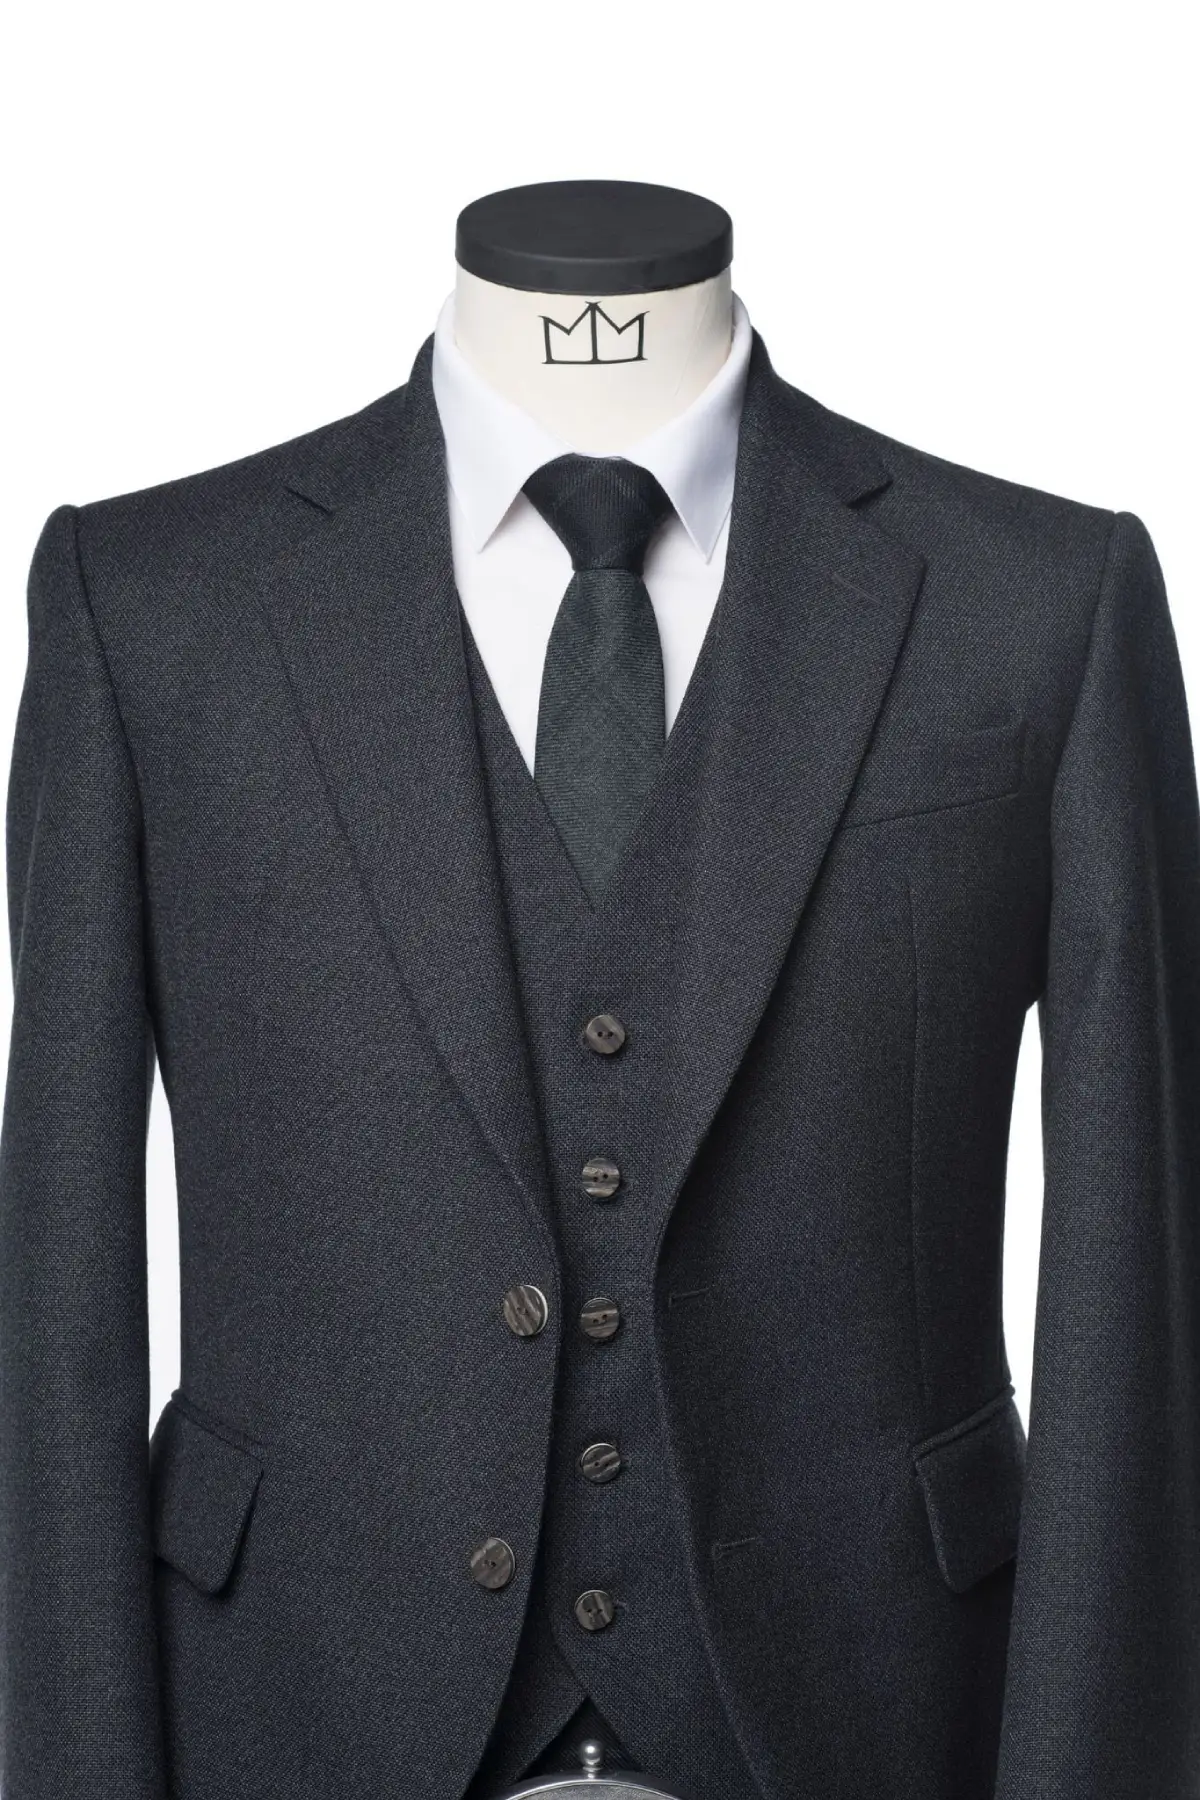 Tweed-Kilt-Outfit5